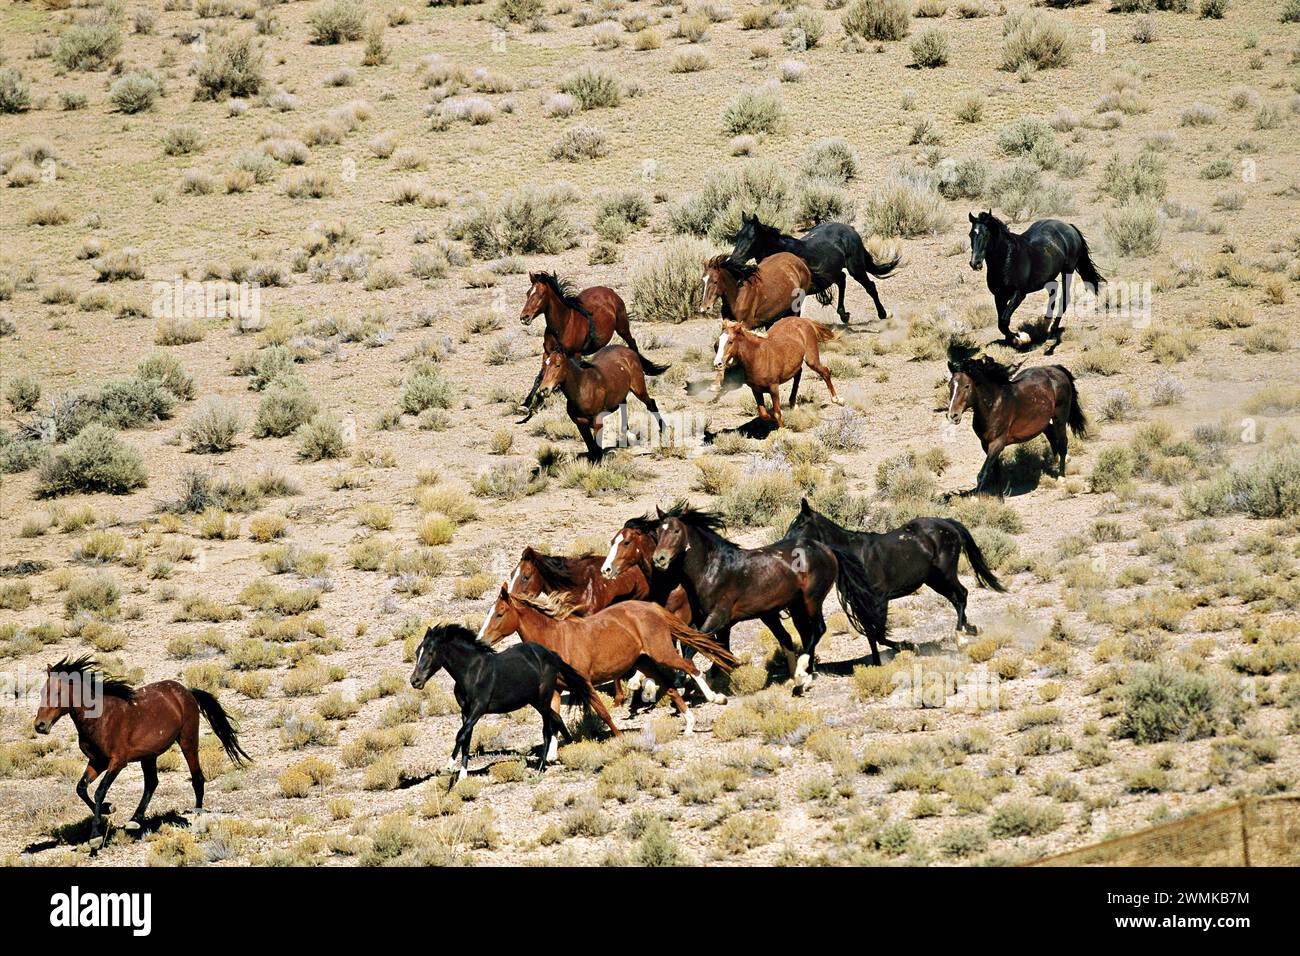 Eine Herde wilder Pferde galoppiert durch das trockene Nevada-Gebirge, die während eines Zusammenschlusses des Bureau of Land Management von einem Hubschrauber verfolgt werden. Mustang Herden sind föderal... Stockfoto